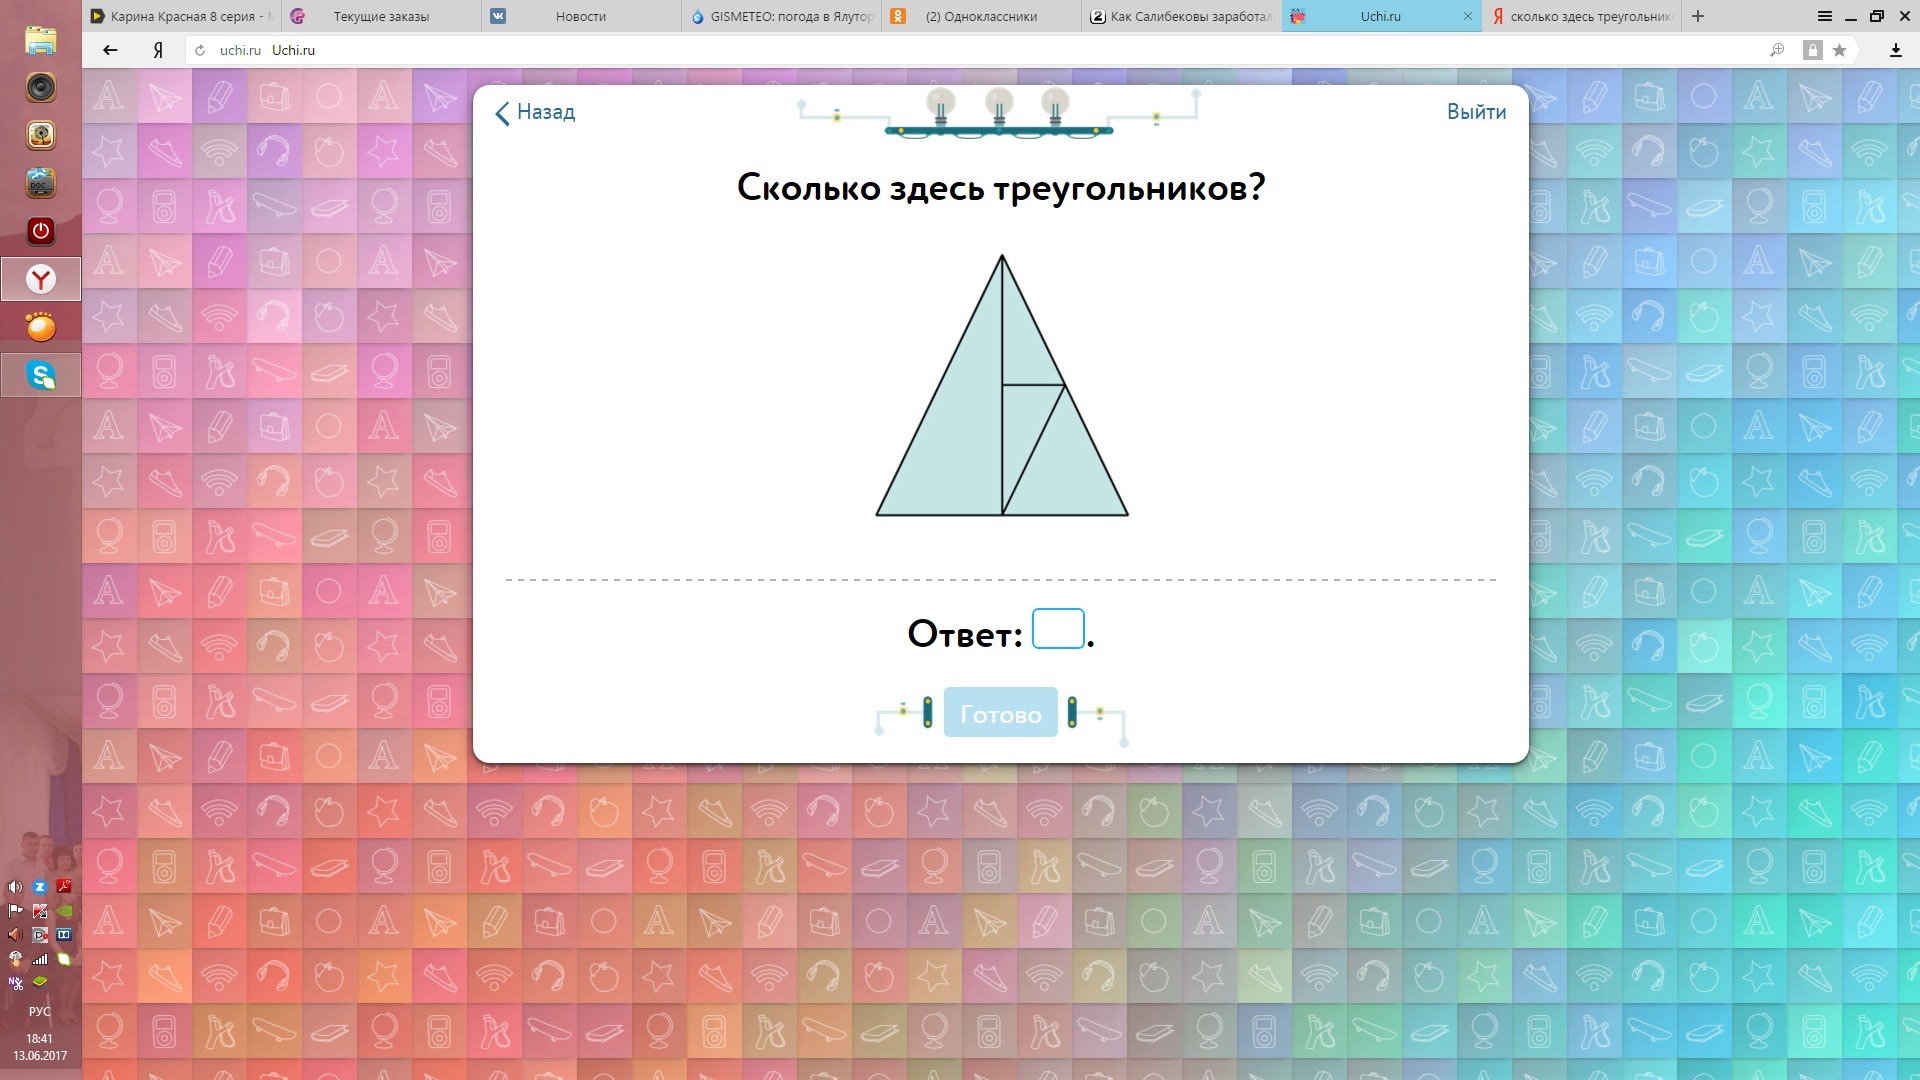 Вписанный квадрат учи ру ответ. Треугольники ответы. Учи ру. Сколькотздесь треугольников. Треугольников на учи ру.